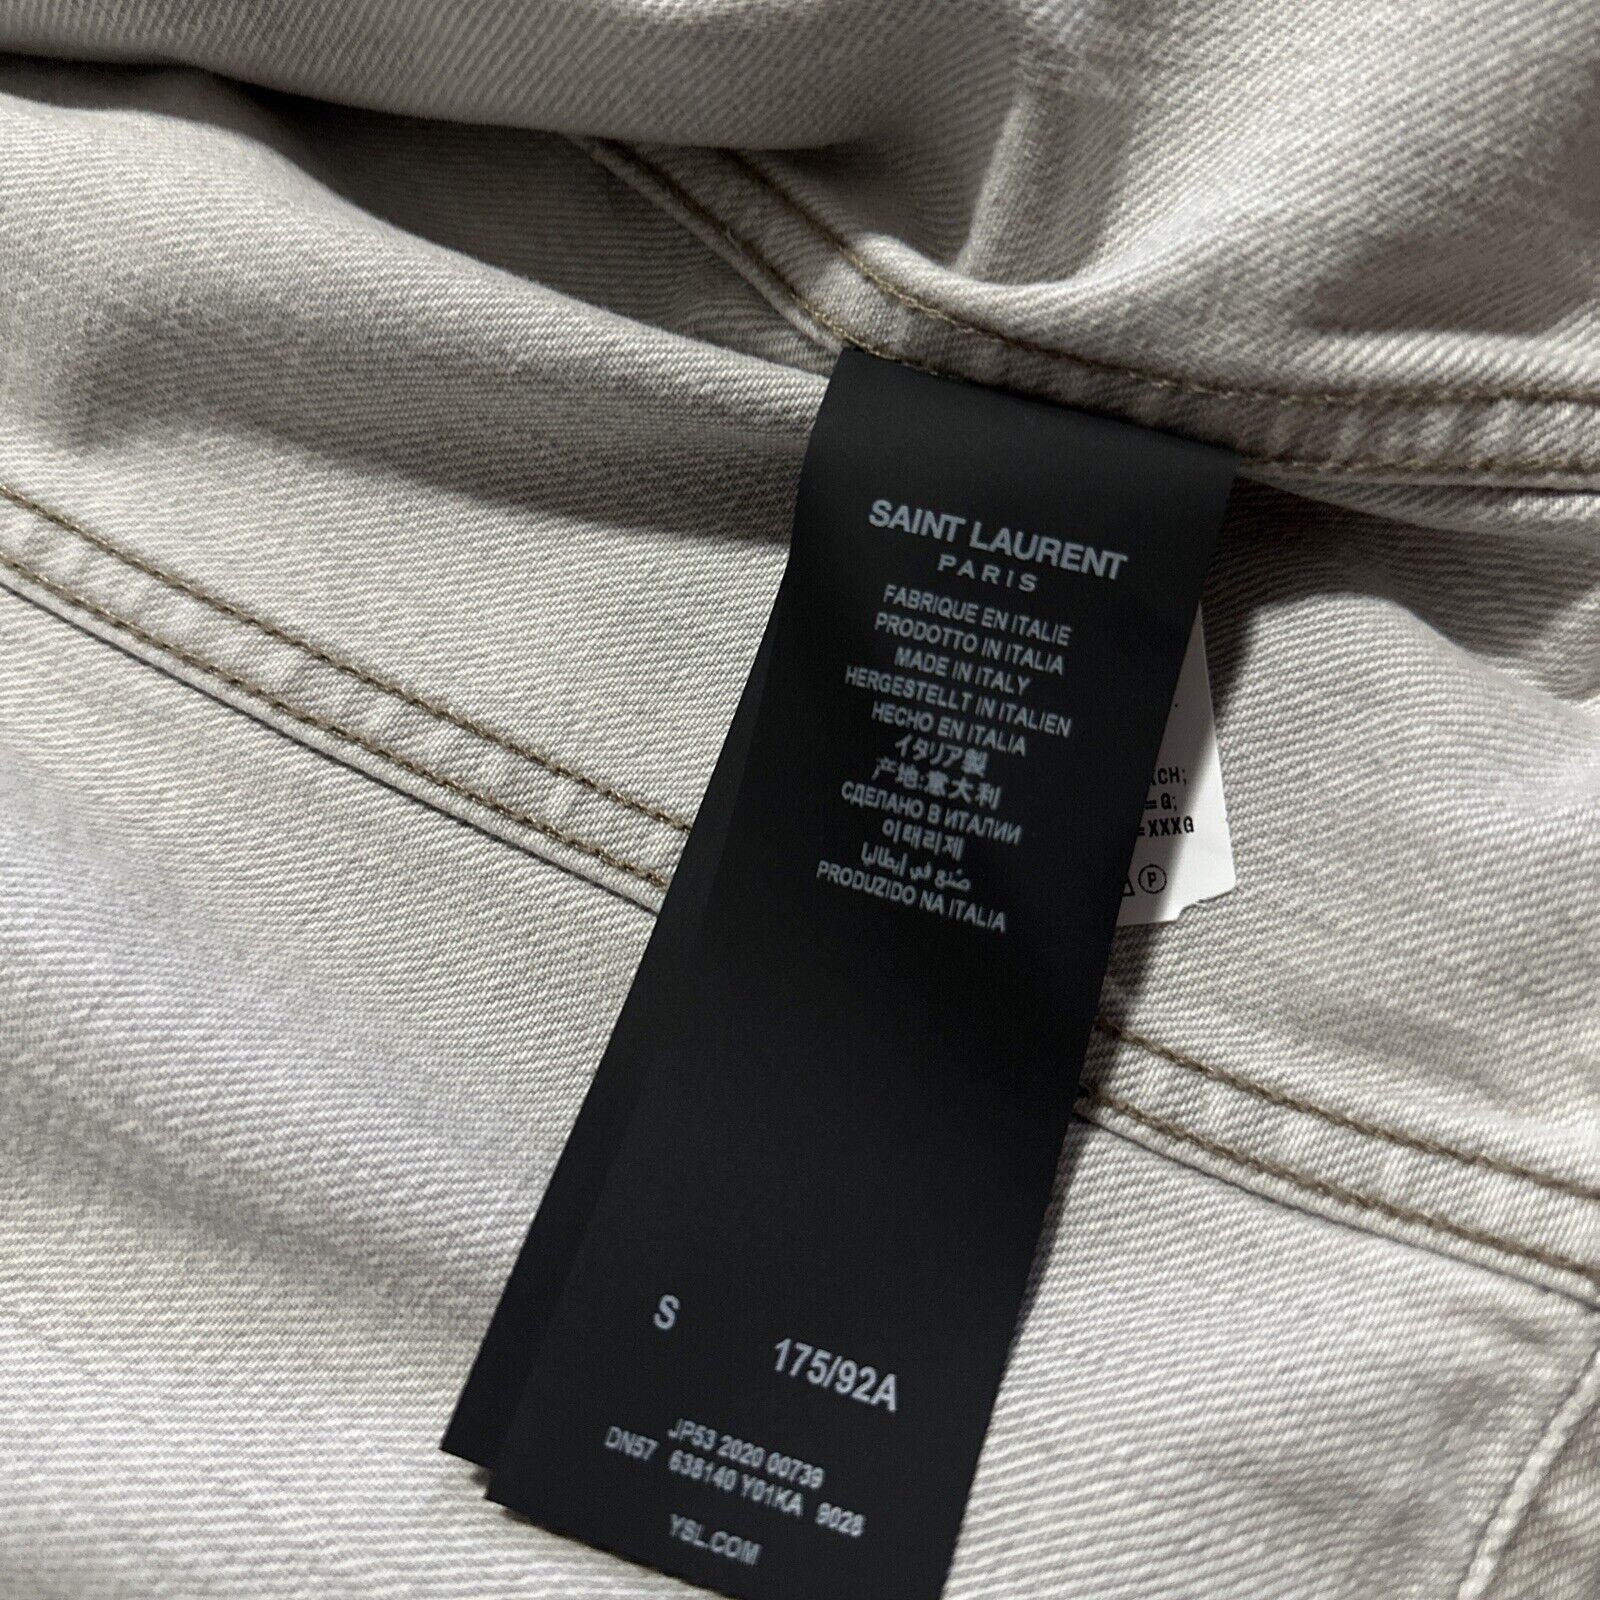 Neu 1290 $ Saint Laurent Taillierte Jeansjacke für Herren, Grau Super Bleach S